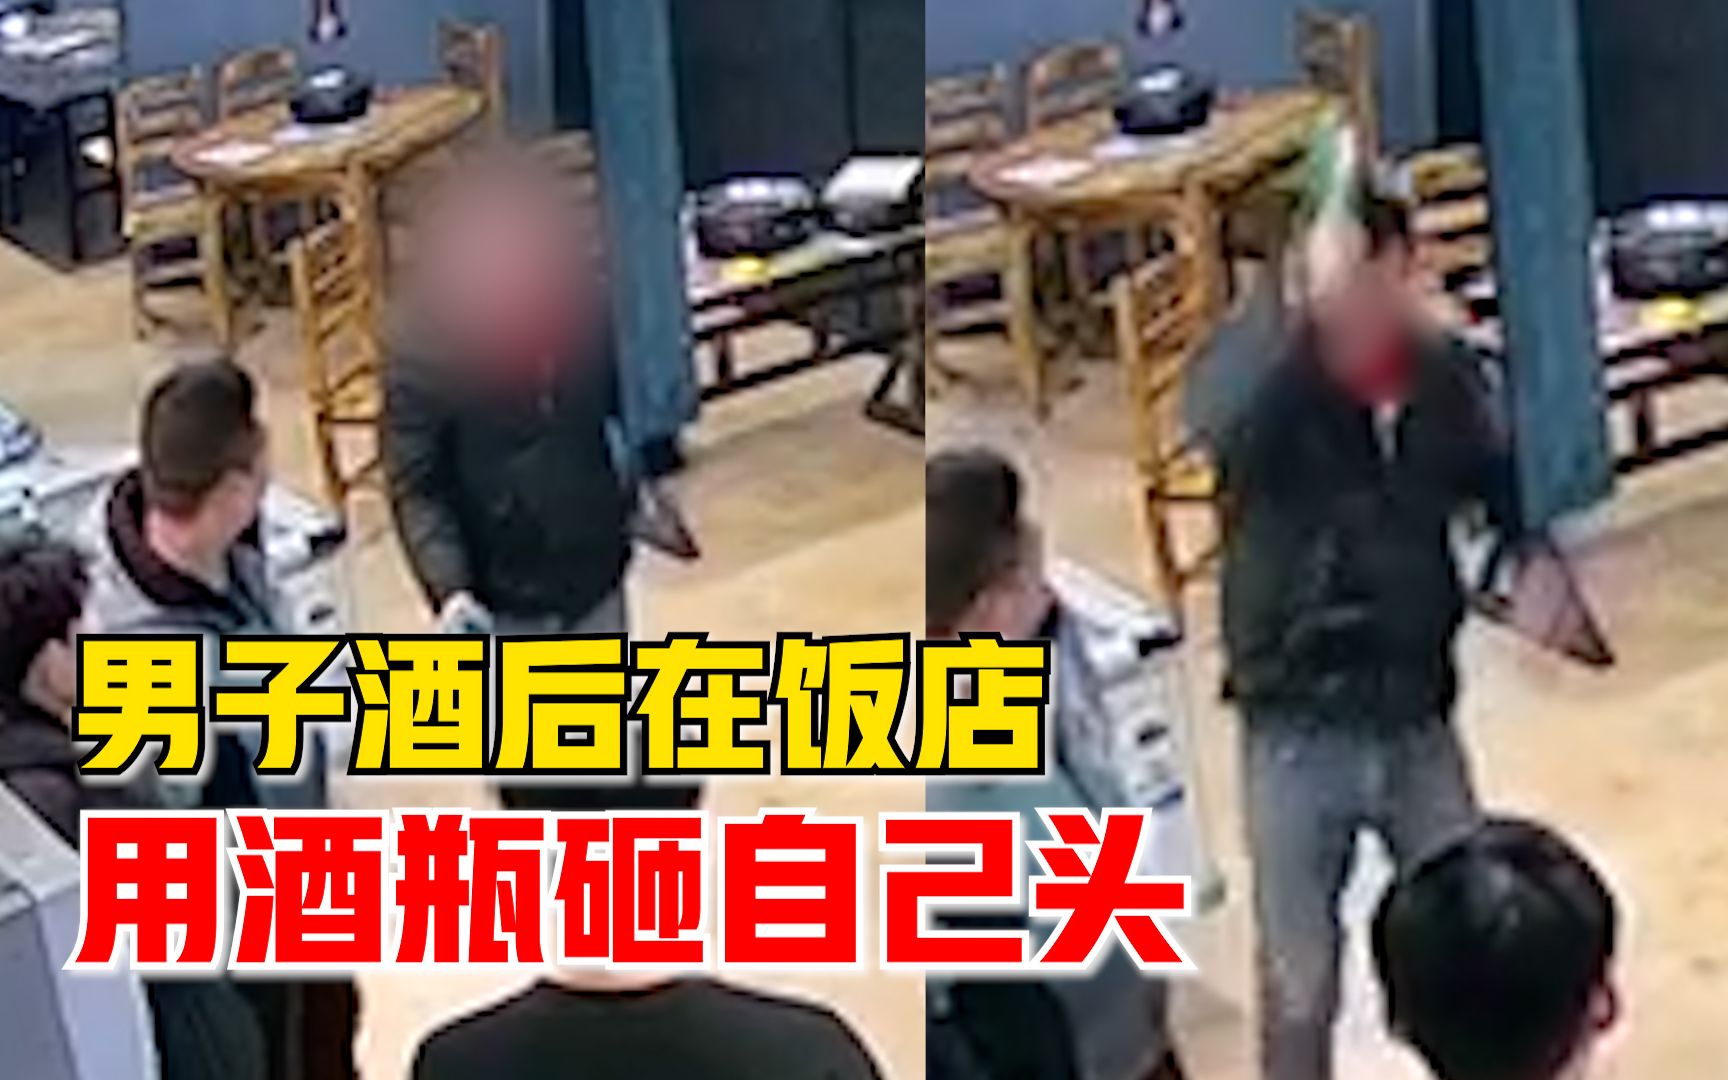 天降酒瓶砸伤4岁男童 渝中警方抓获嫌疑人 - 重庆日报网